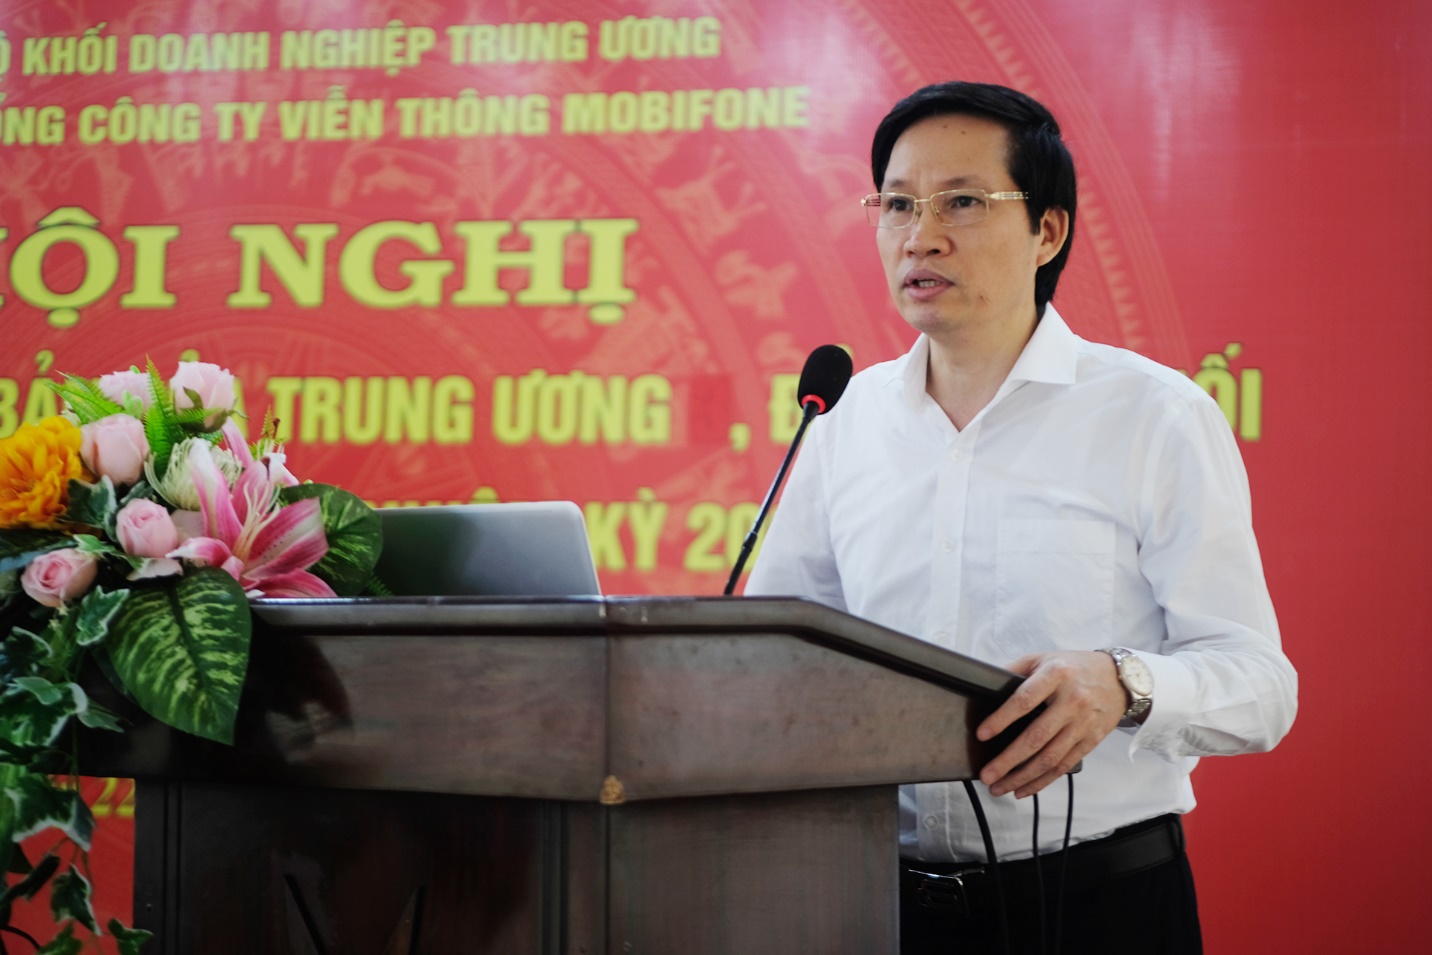 Đồng chí Nguyễn Quang Tiến